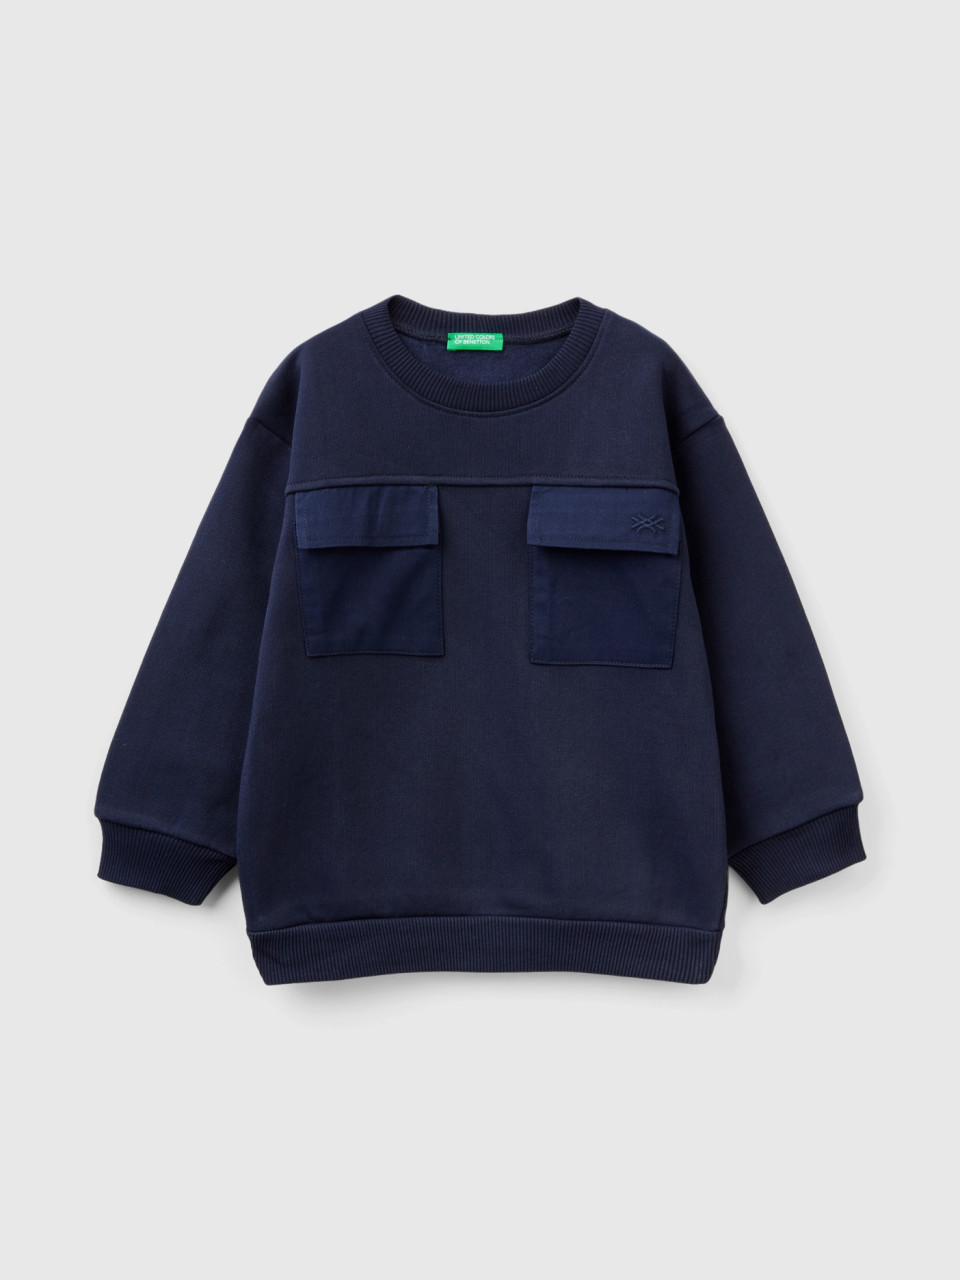 Benetton, Warm Sweatshirt With Pockets, Dark Blue, Kids